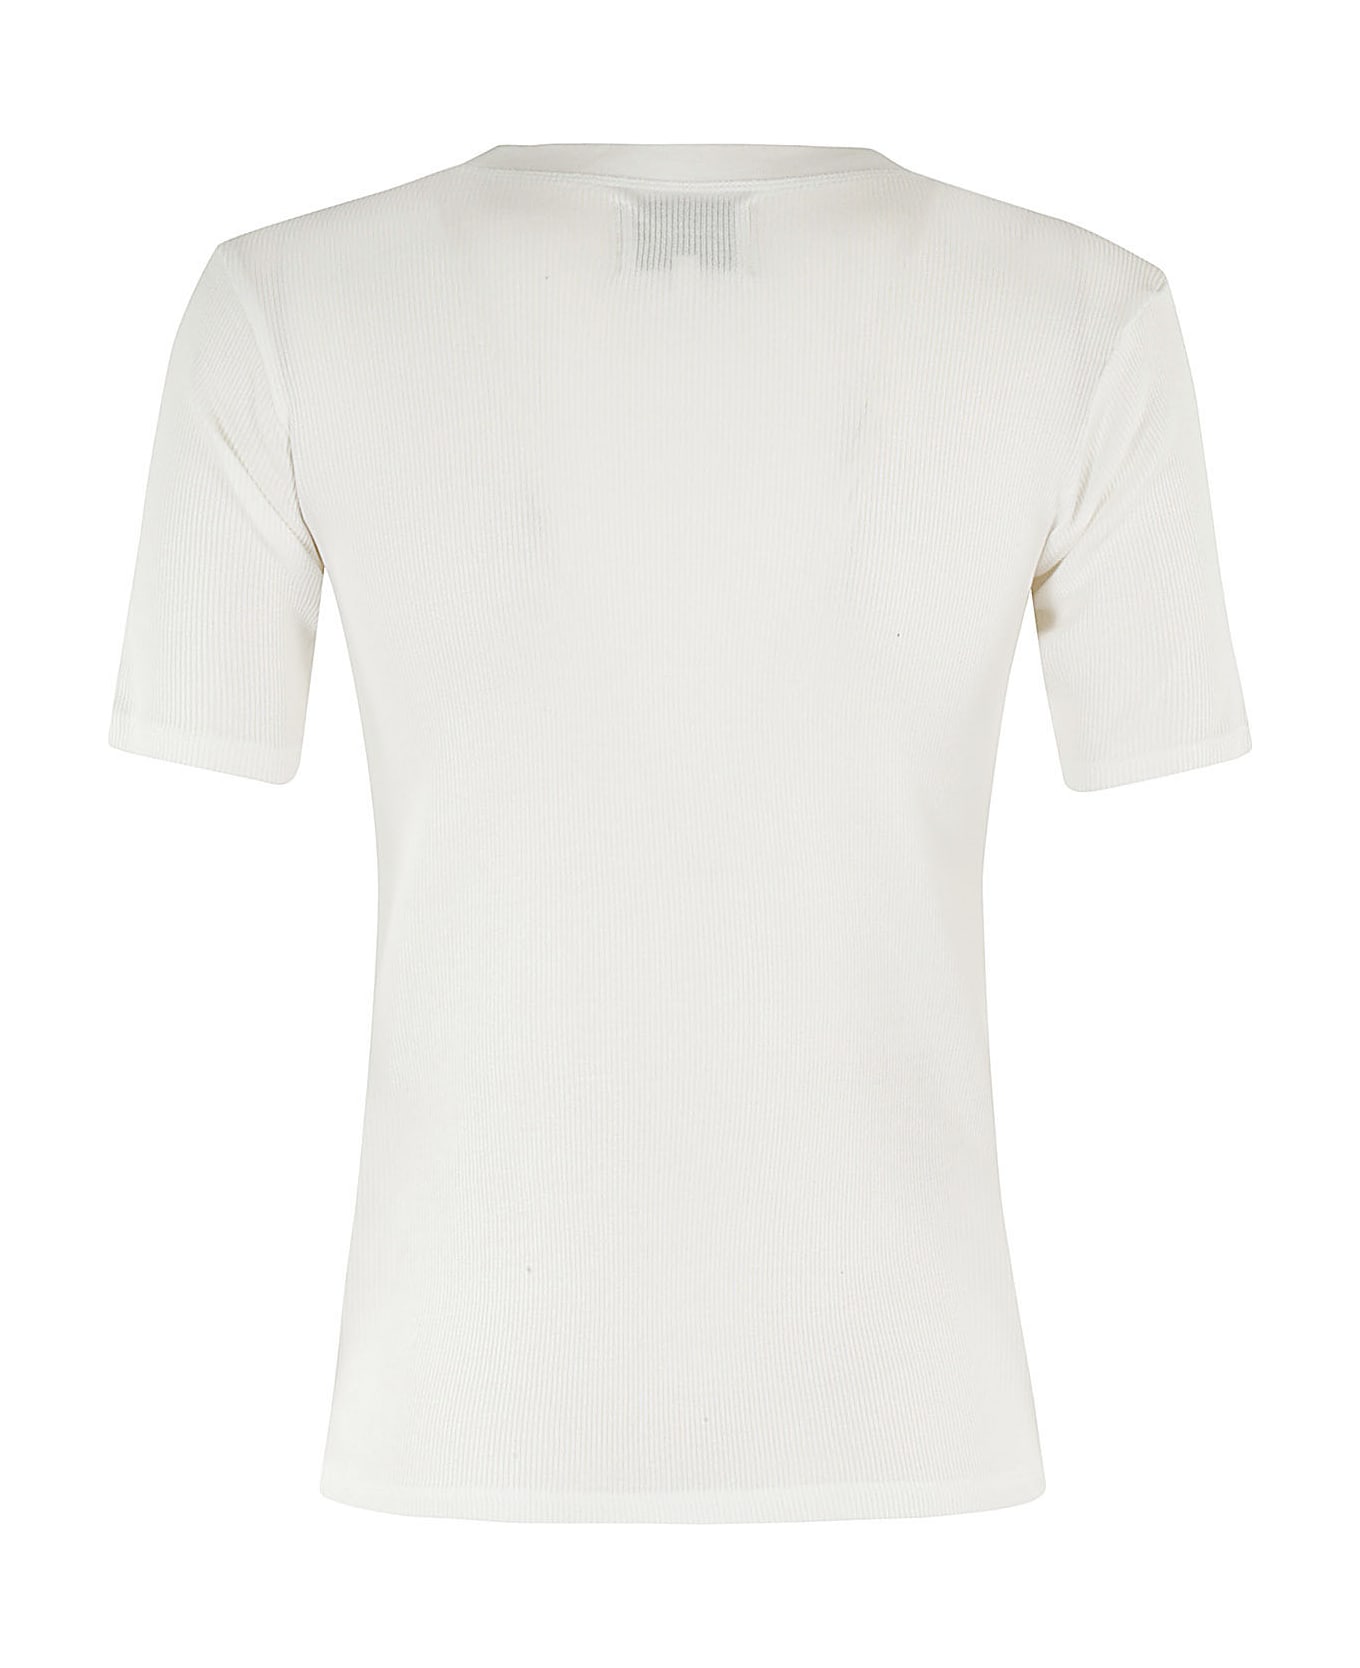 Loulou Studio Tshirt - White